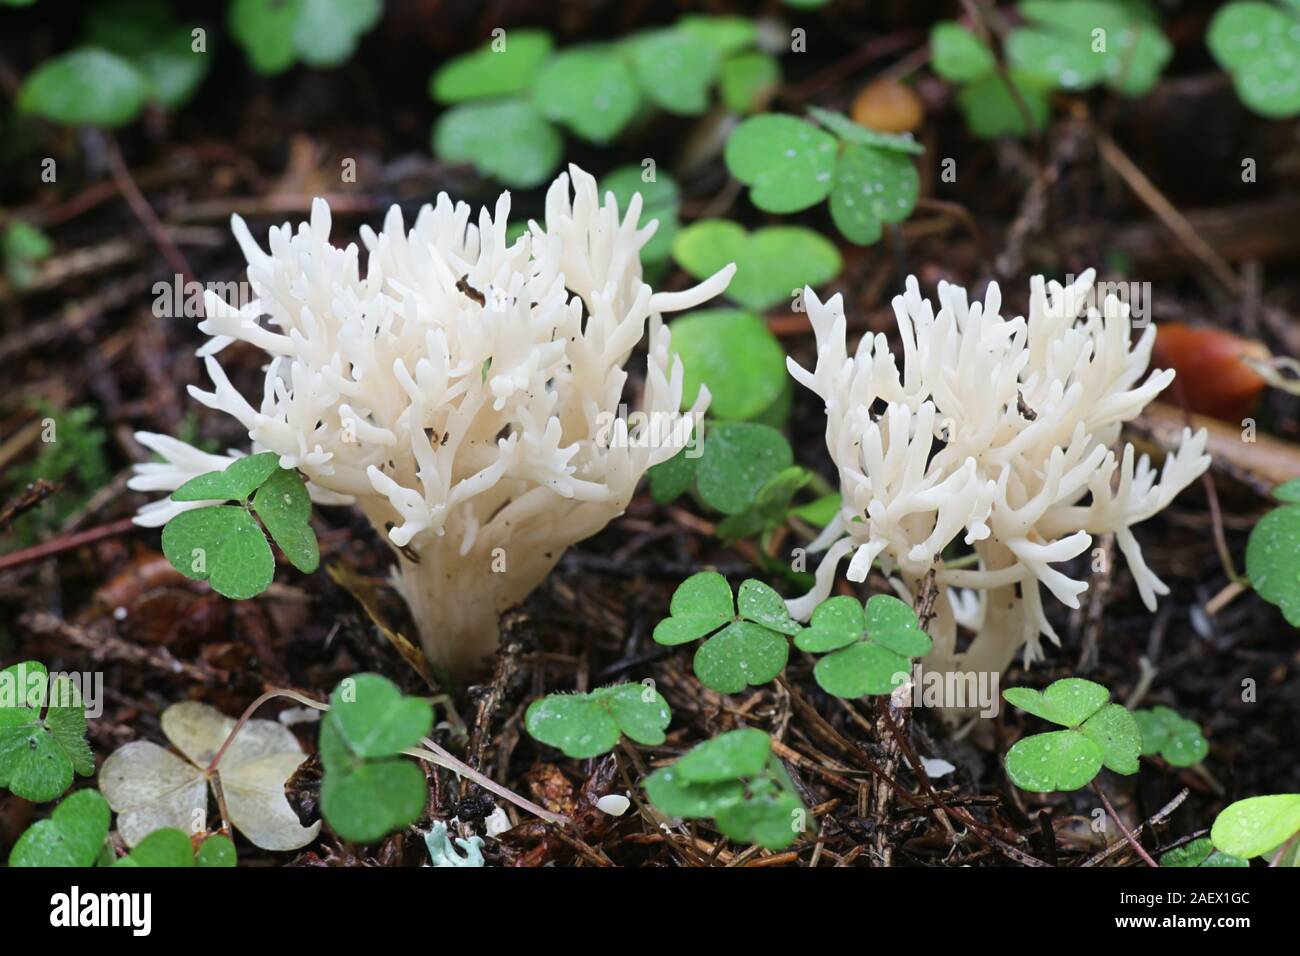 Clavulina cristata, wie die weiße Koralle Pilz oder die Crested coral Pilz bekannt, Pilze aus Finnland Stockfoto